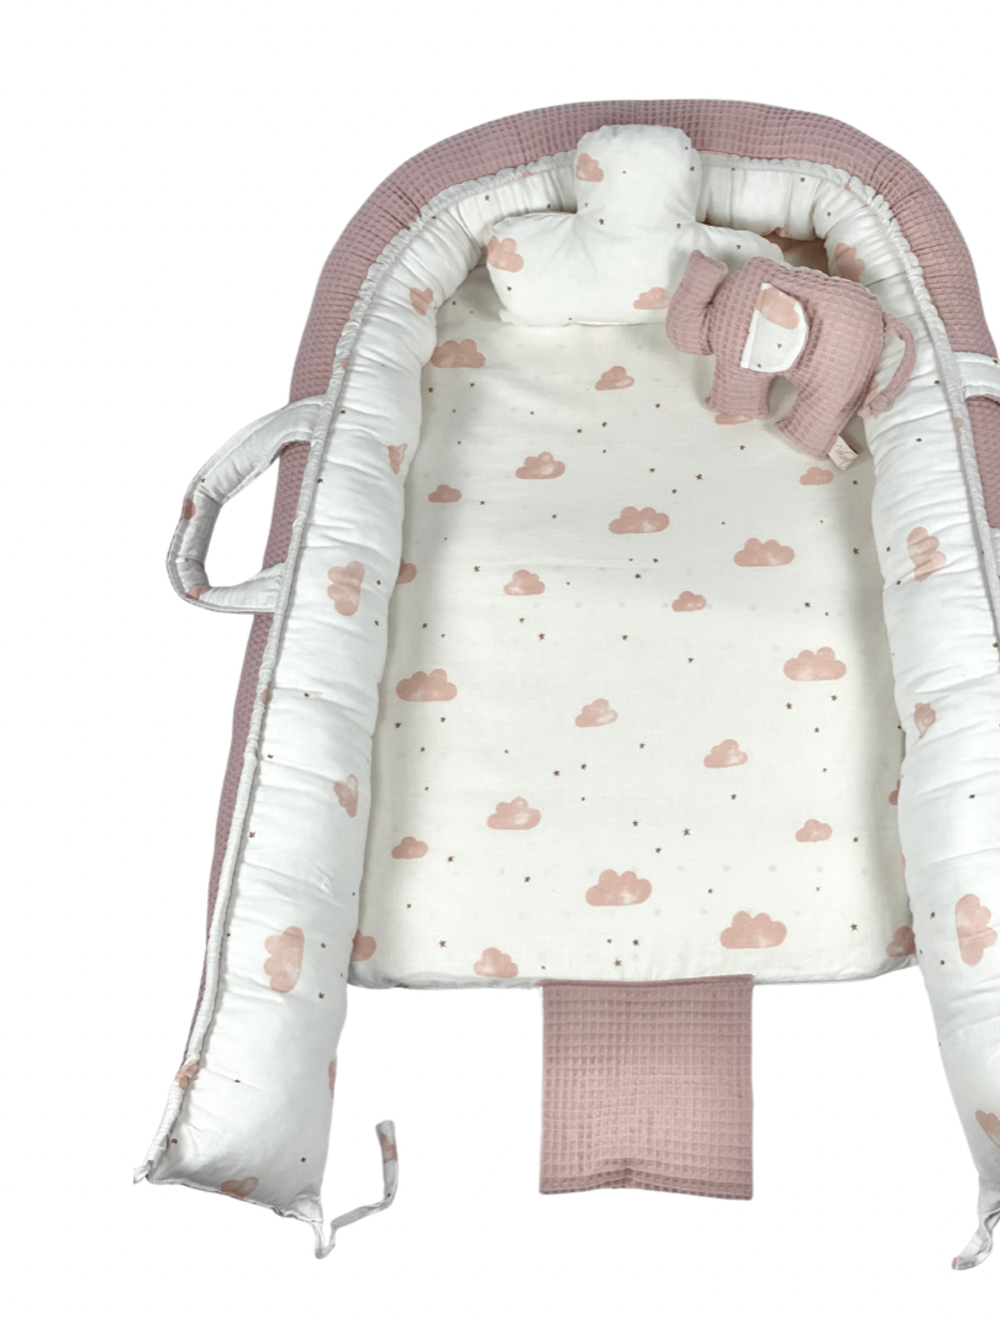 Παιδική Φωλιά - Baby Nest Dusty Pink Clouds